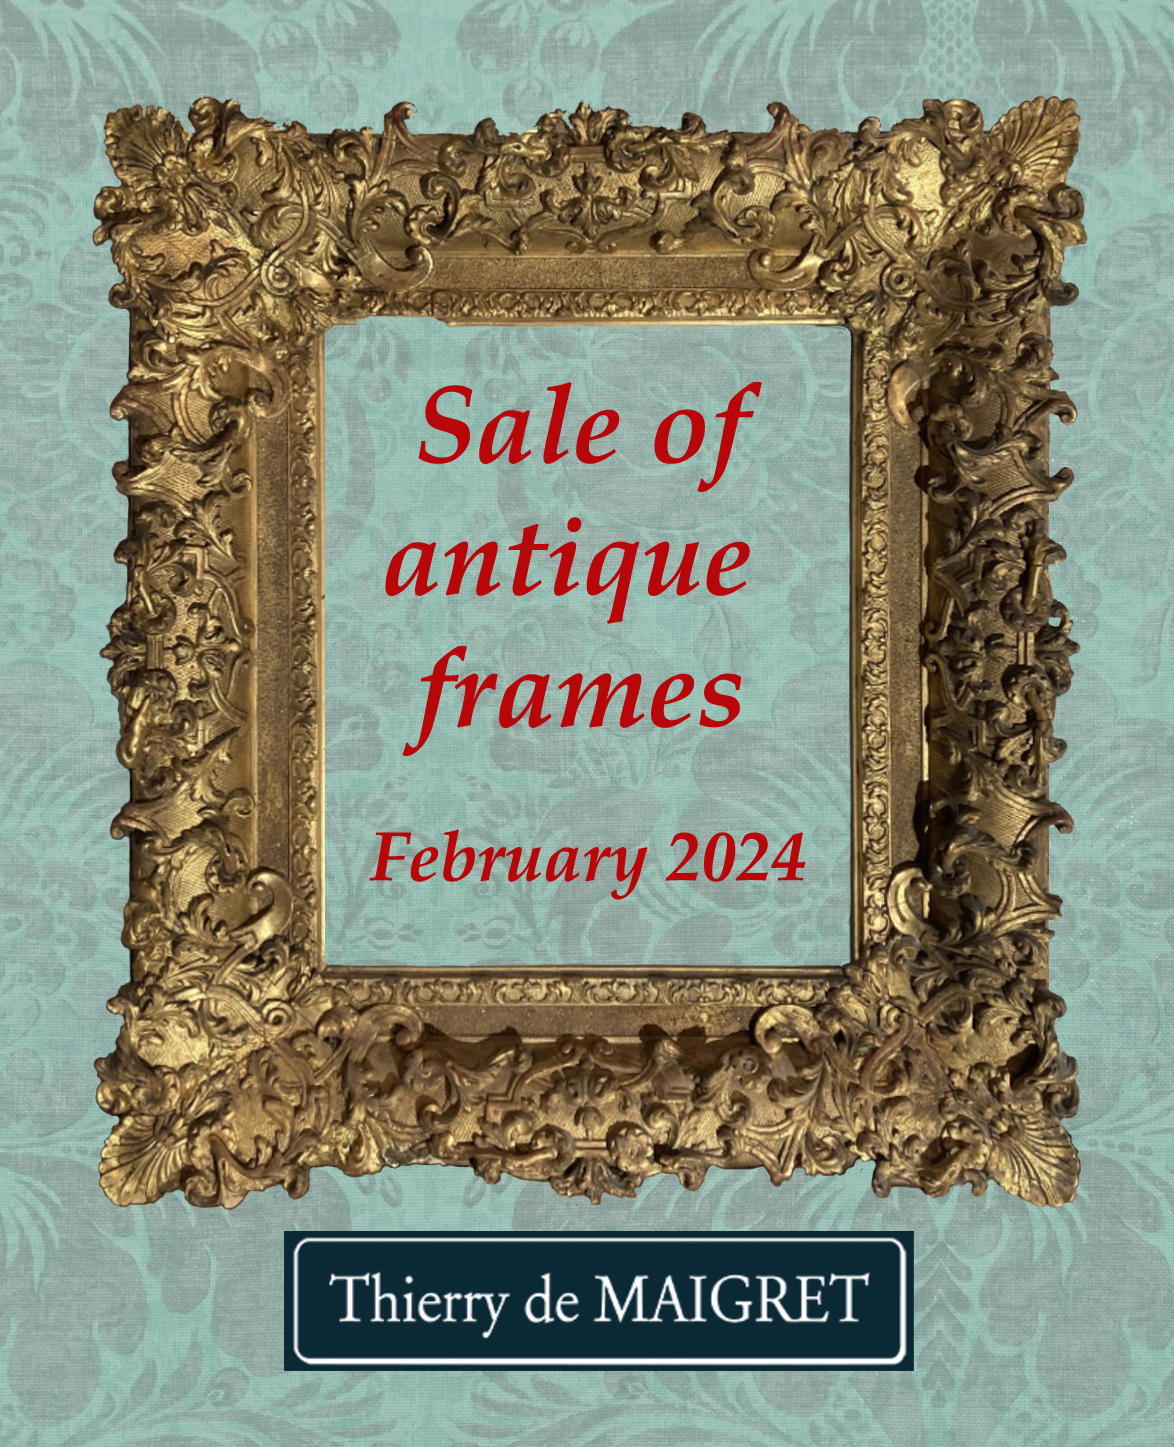 Thierry de Maigret: sale of antique frames in Paris, 9 February 2024